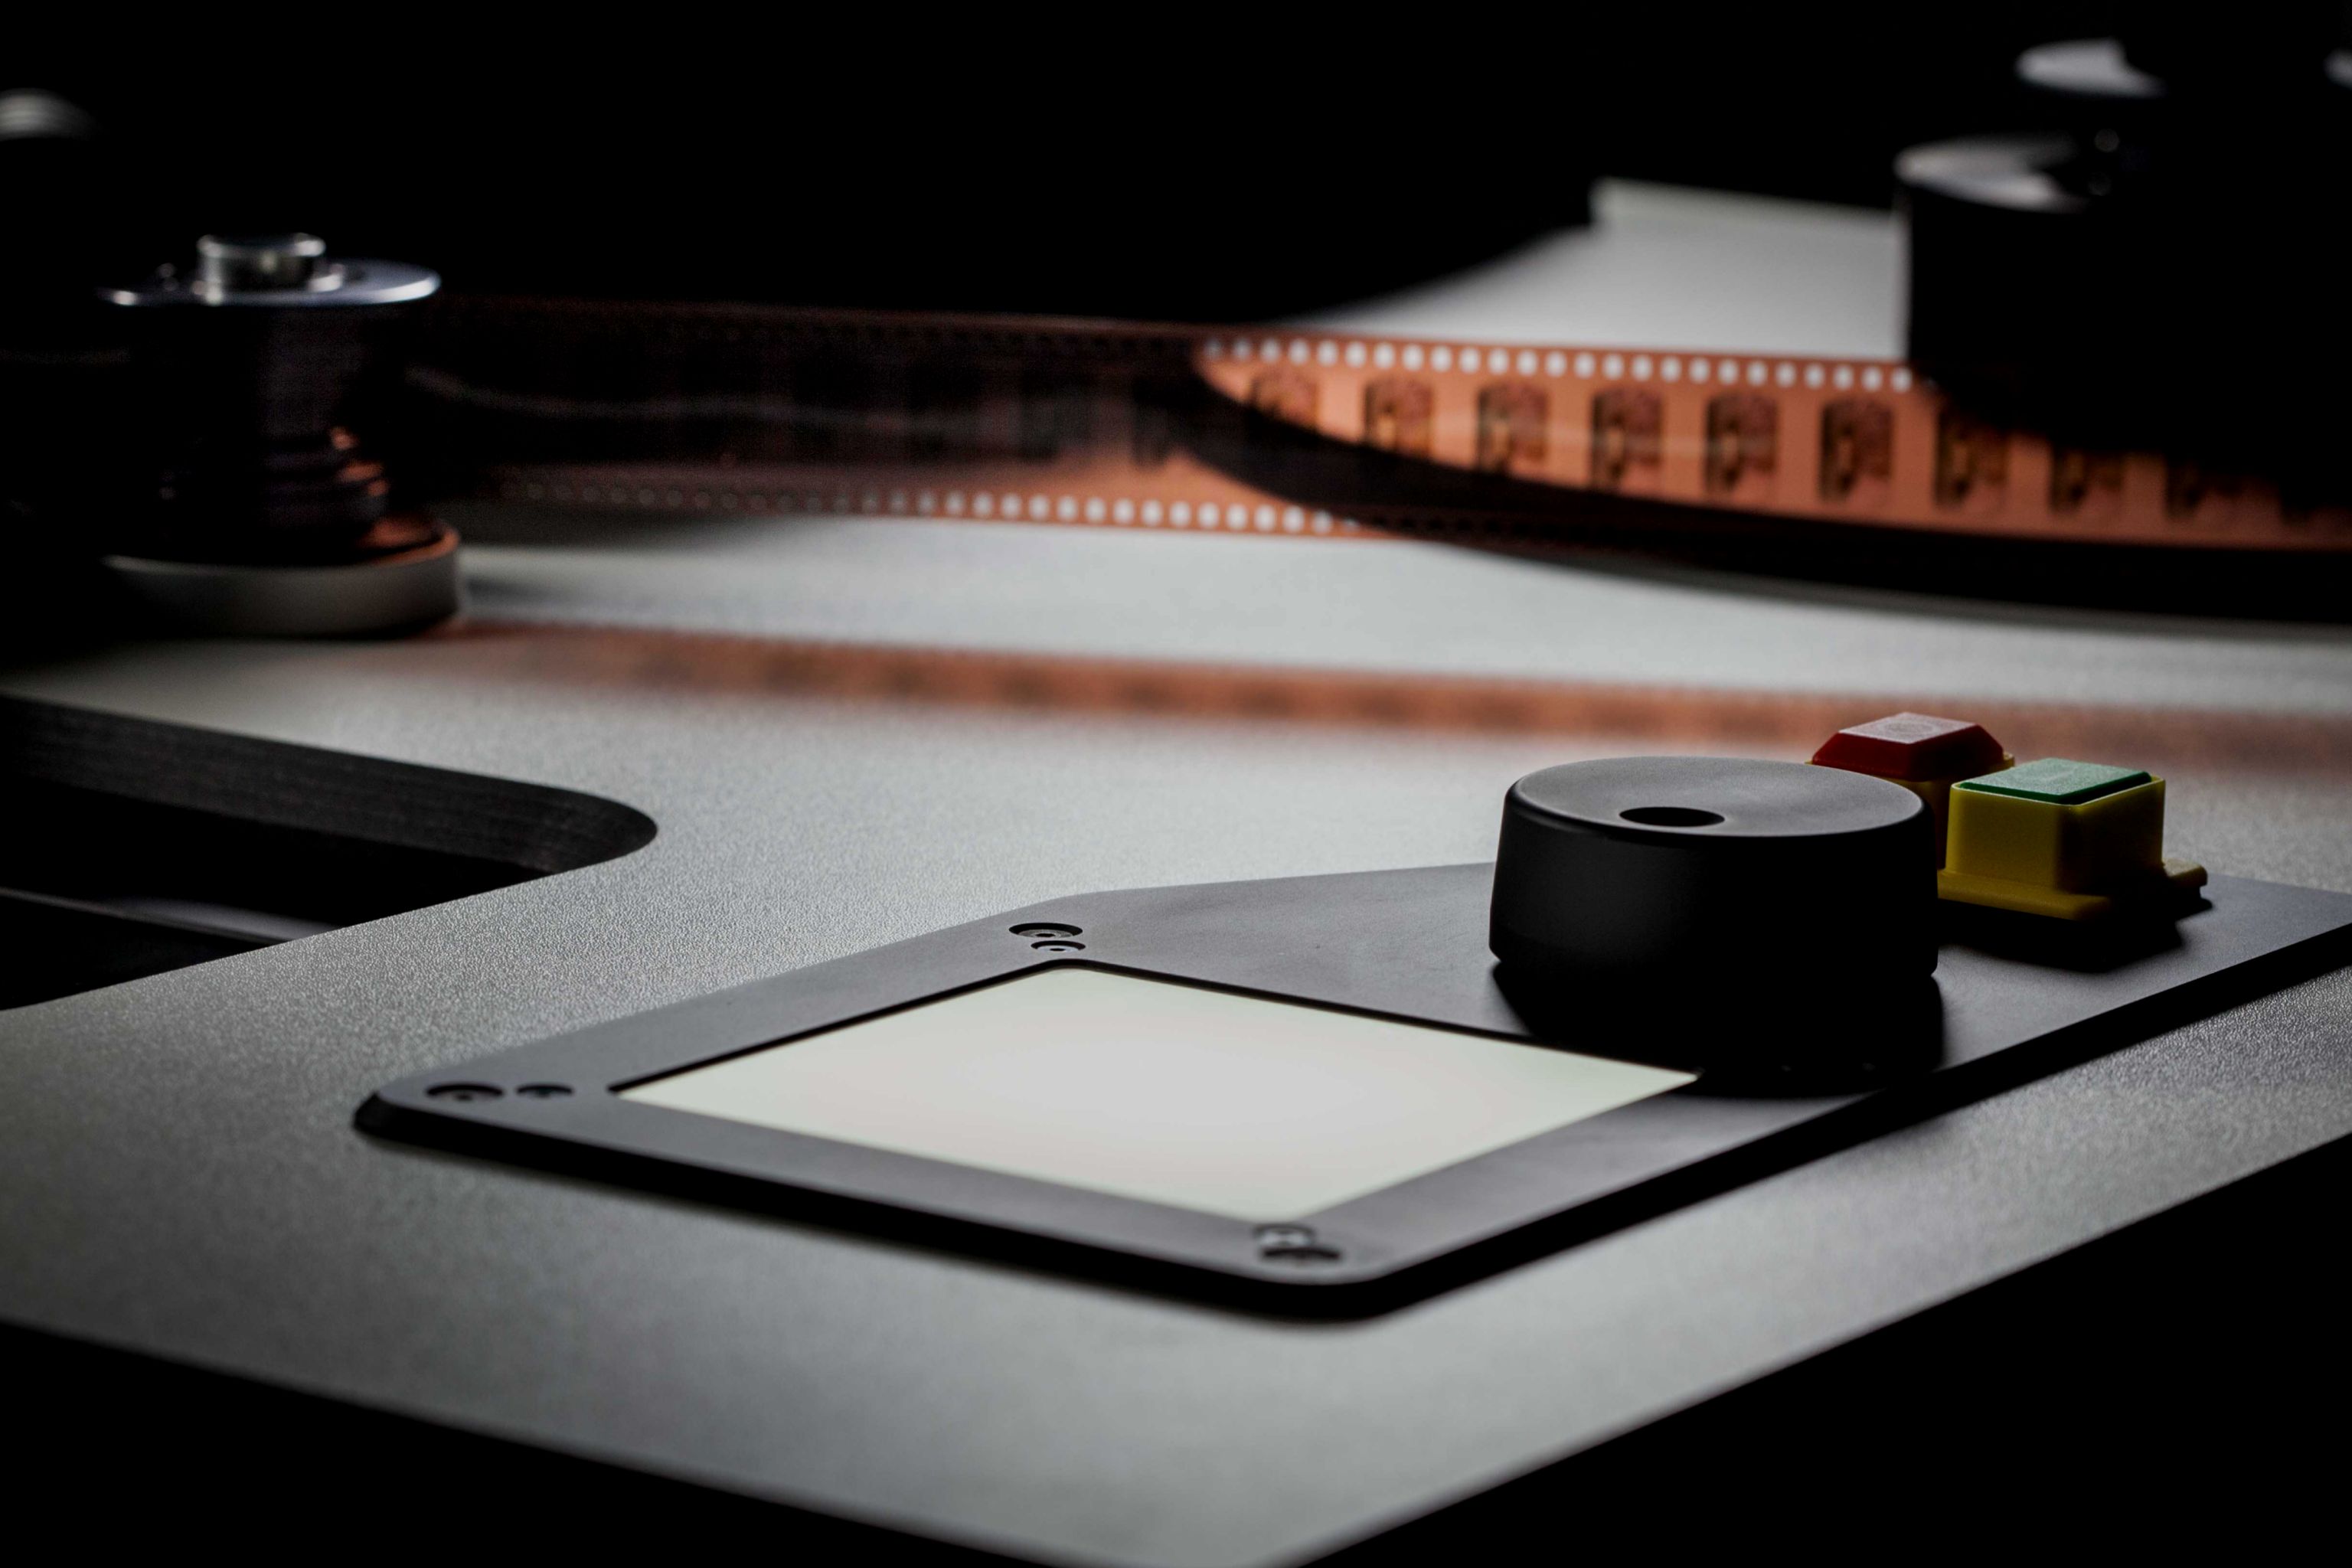 FILM-DIGITAL - Digitalisierung v. Filmen